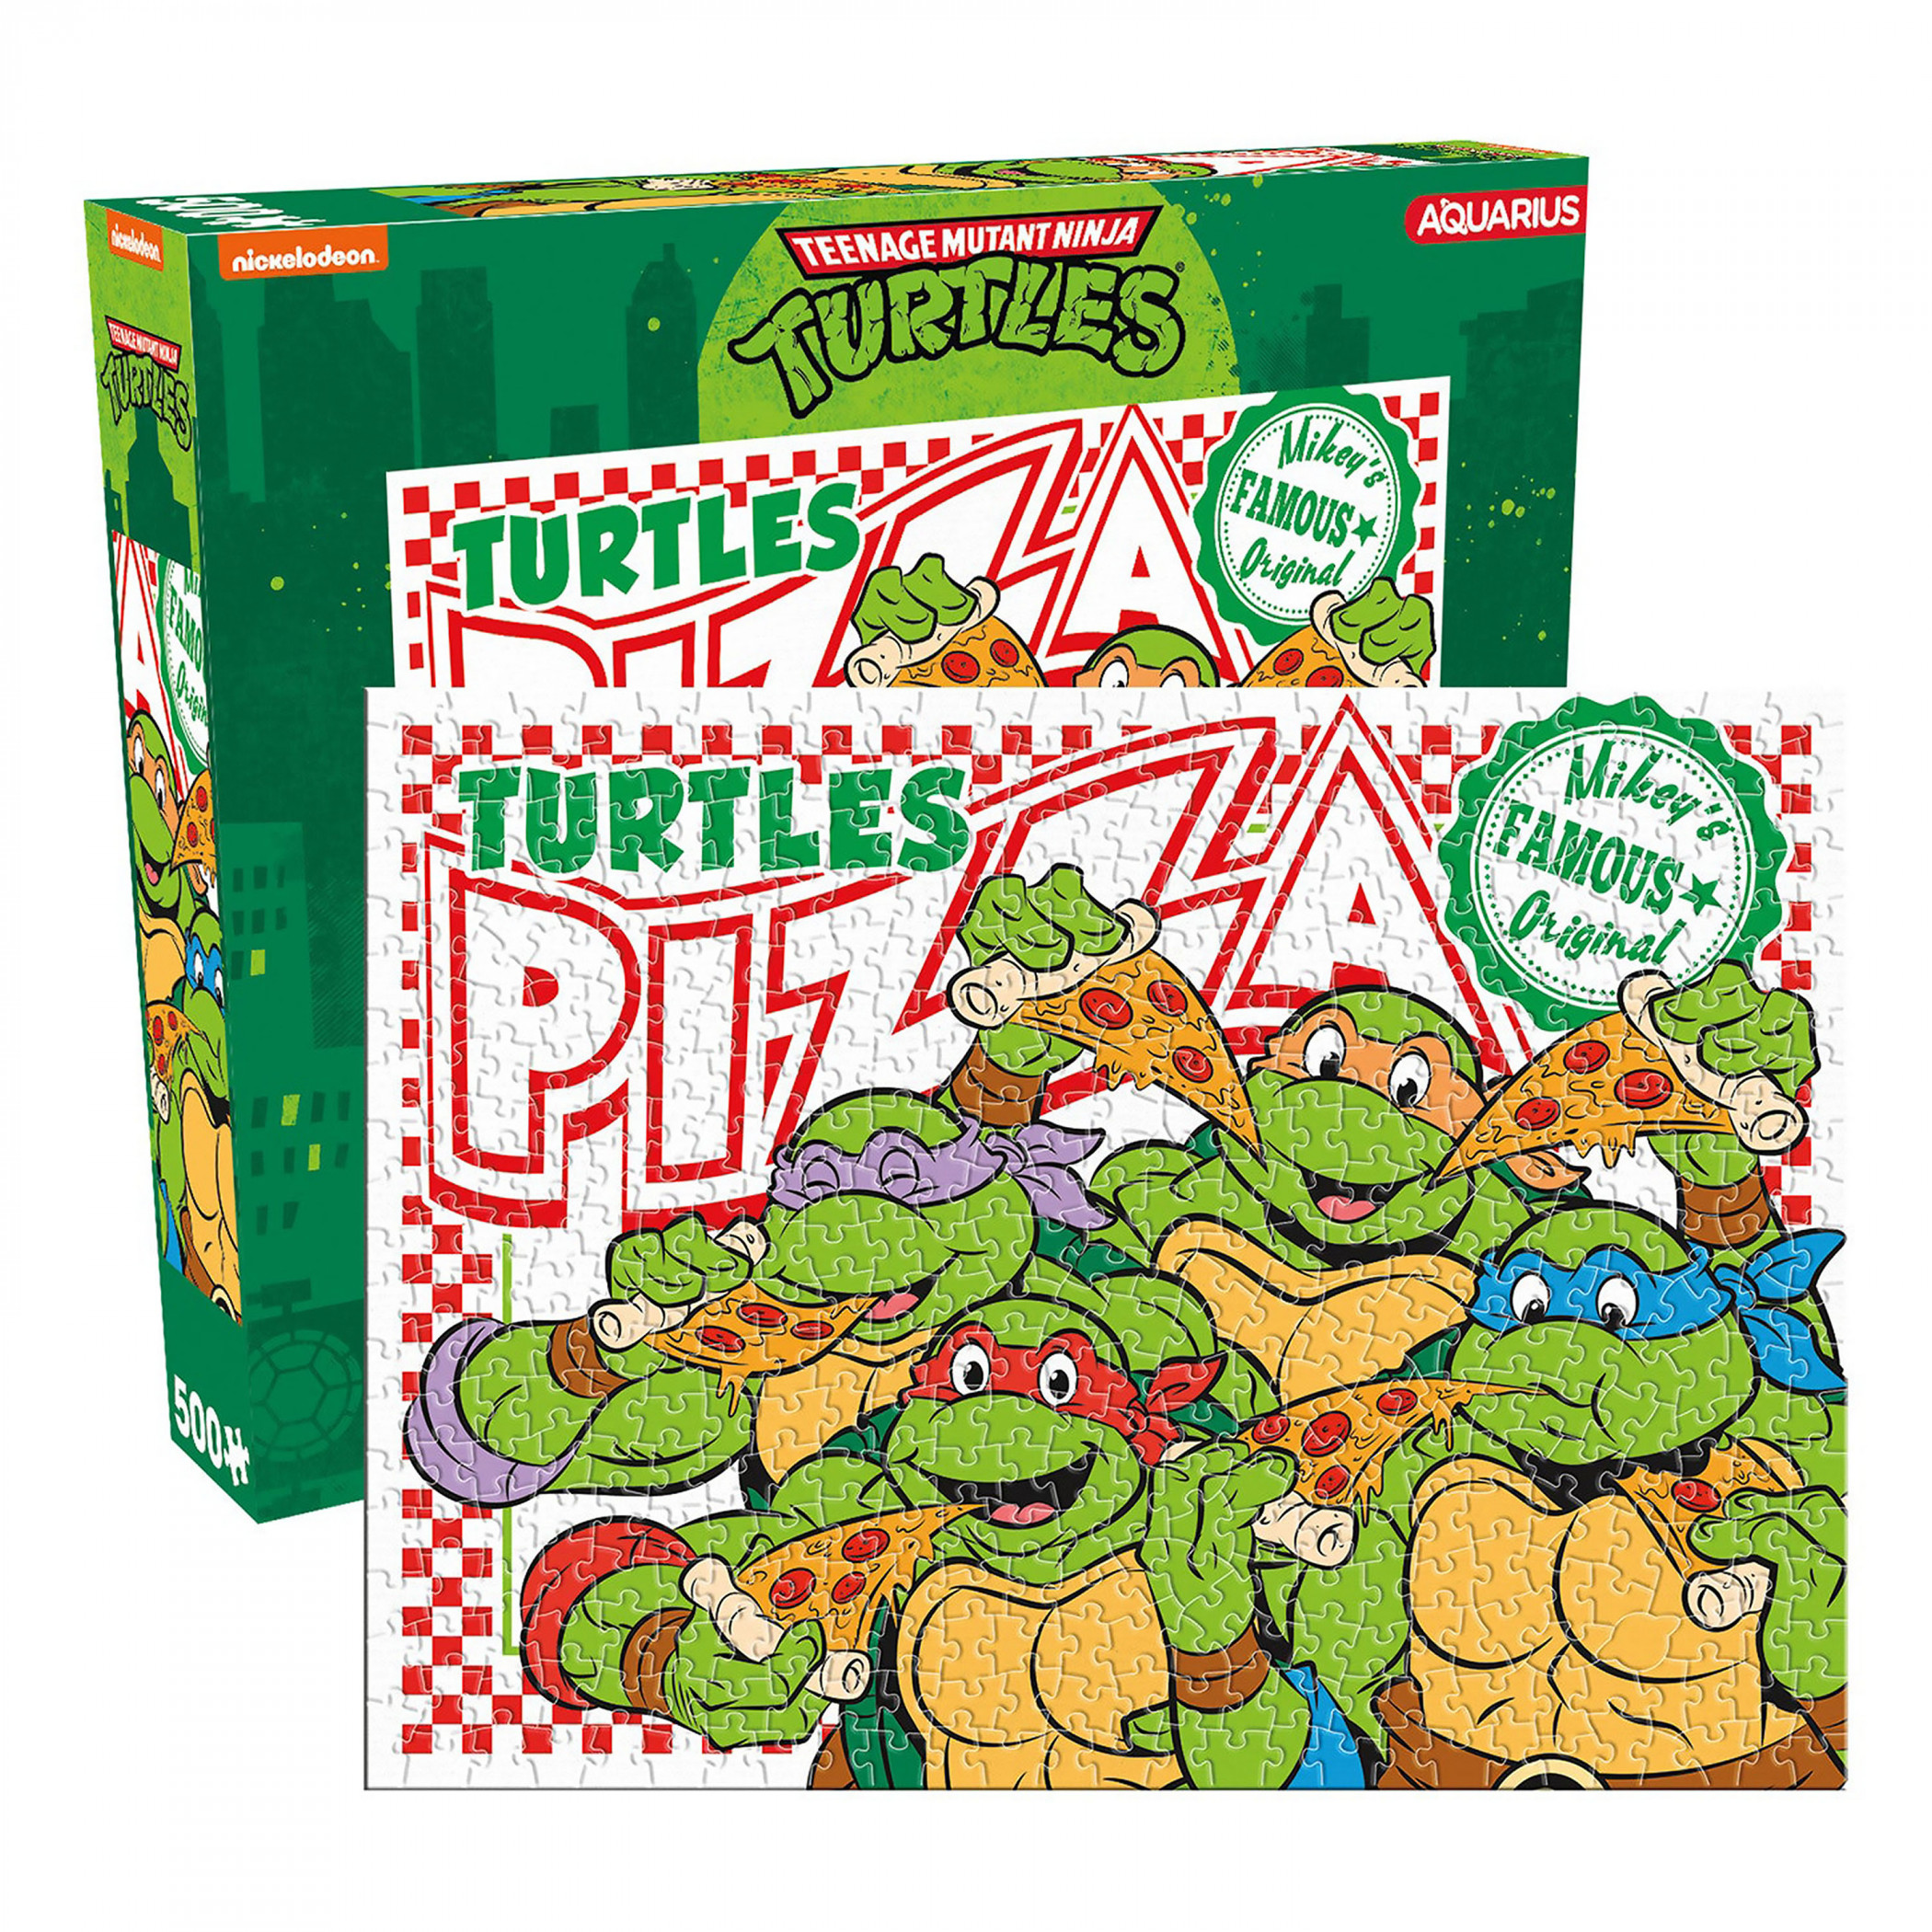 Teenage Mutant Ninja Turtles Pizza Box 500-Piece Puzzle